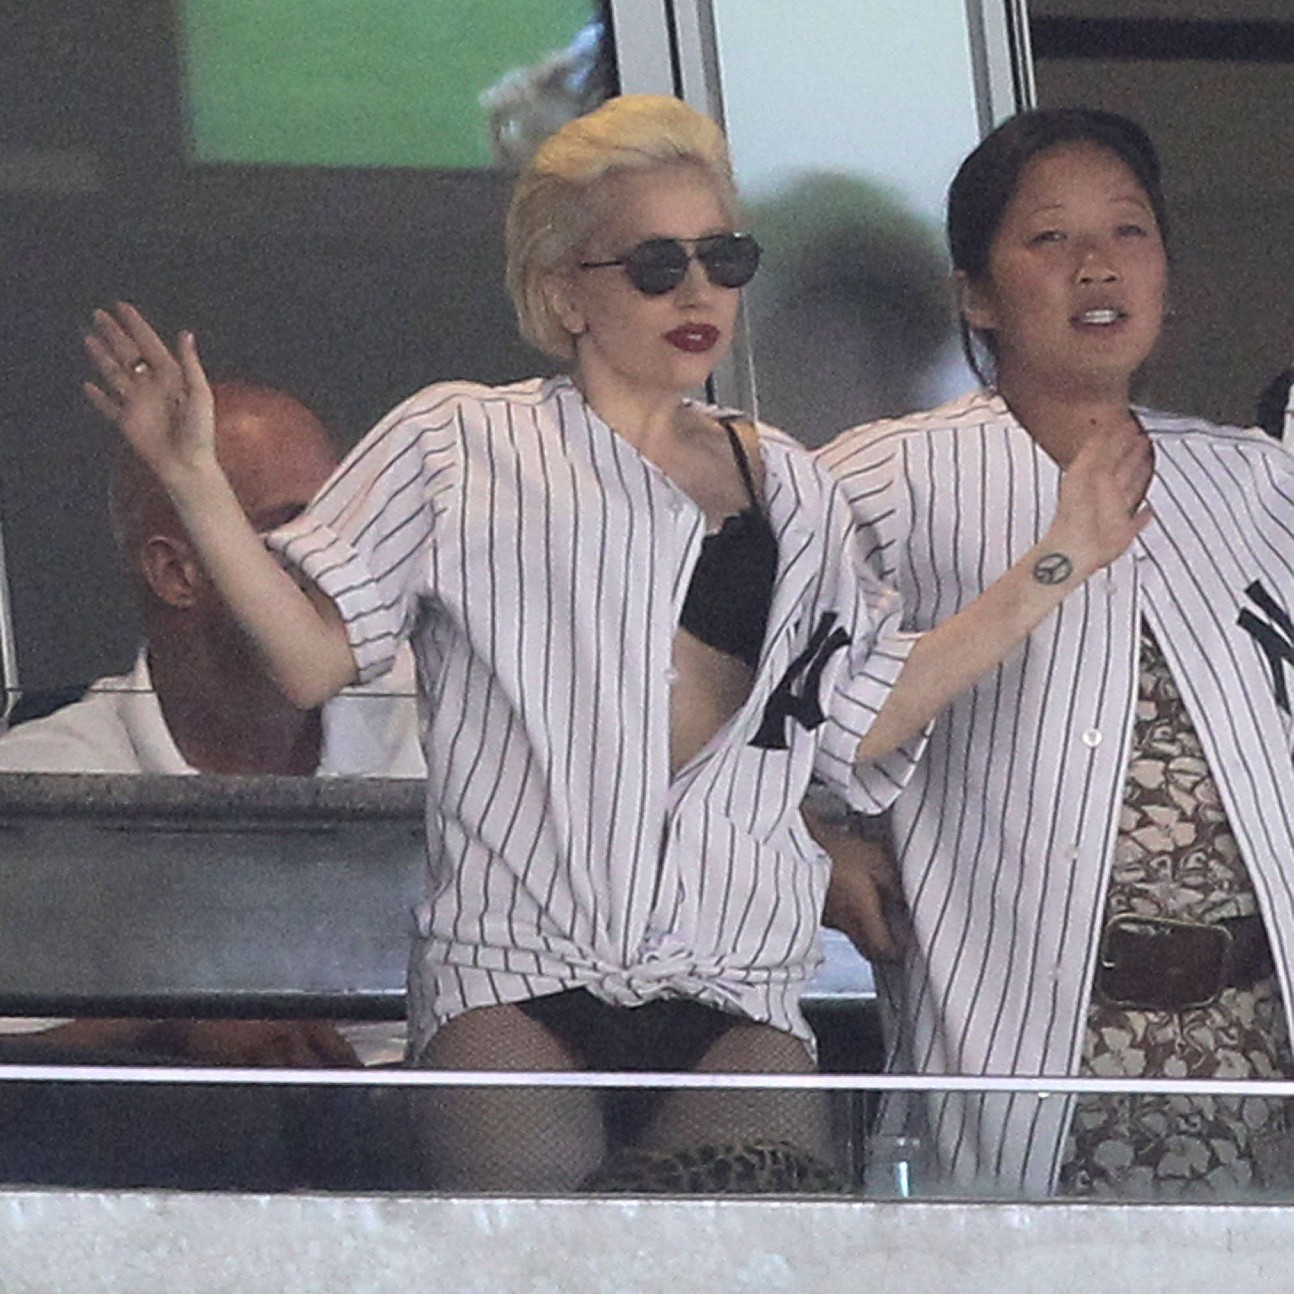 Lady Gaga Yankee Baseball Game Outfit - Lady Gaga No Pants at Yankees Game